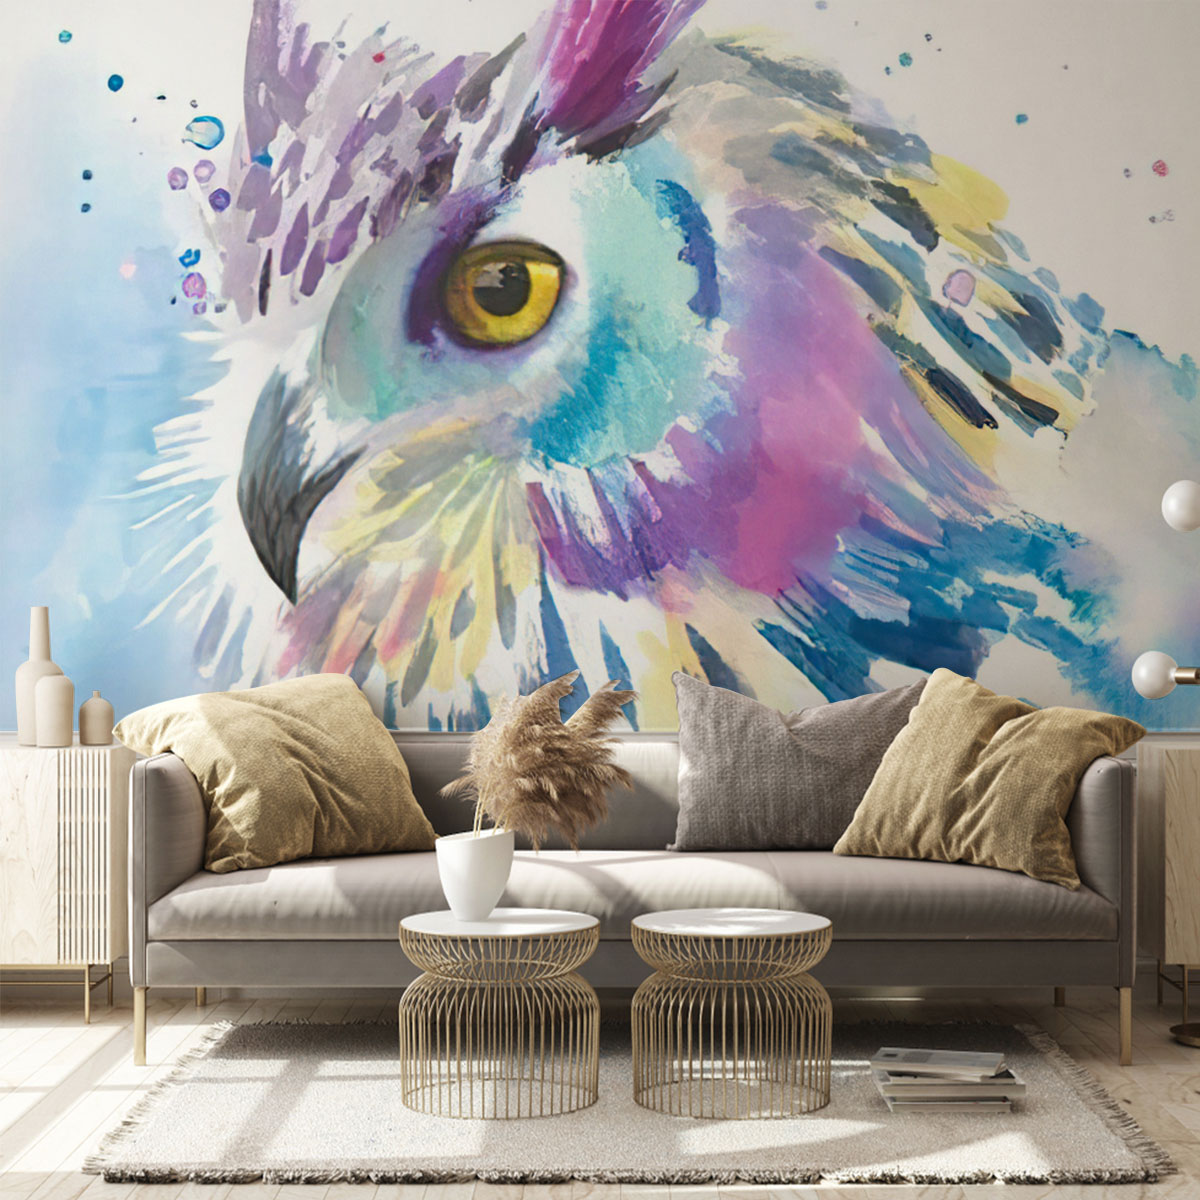 Watercolor Owl Wall Mural_1_2.1